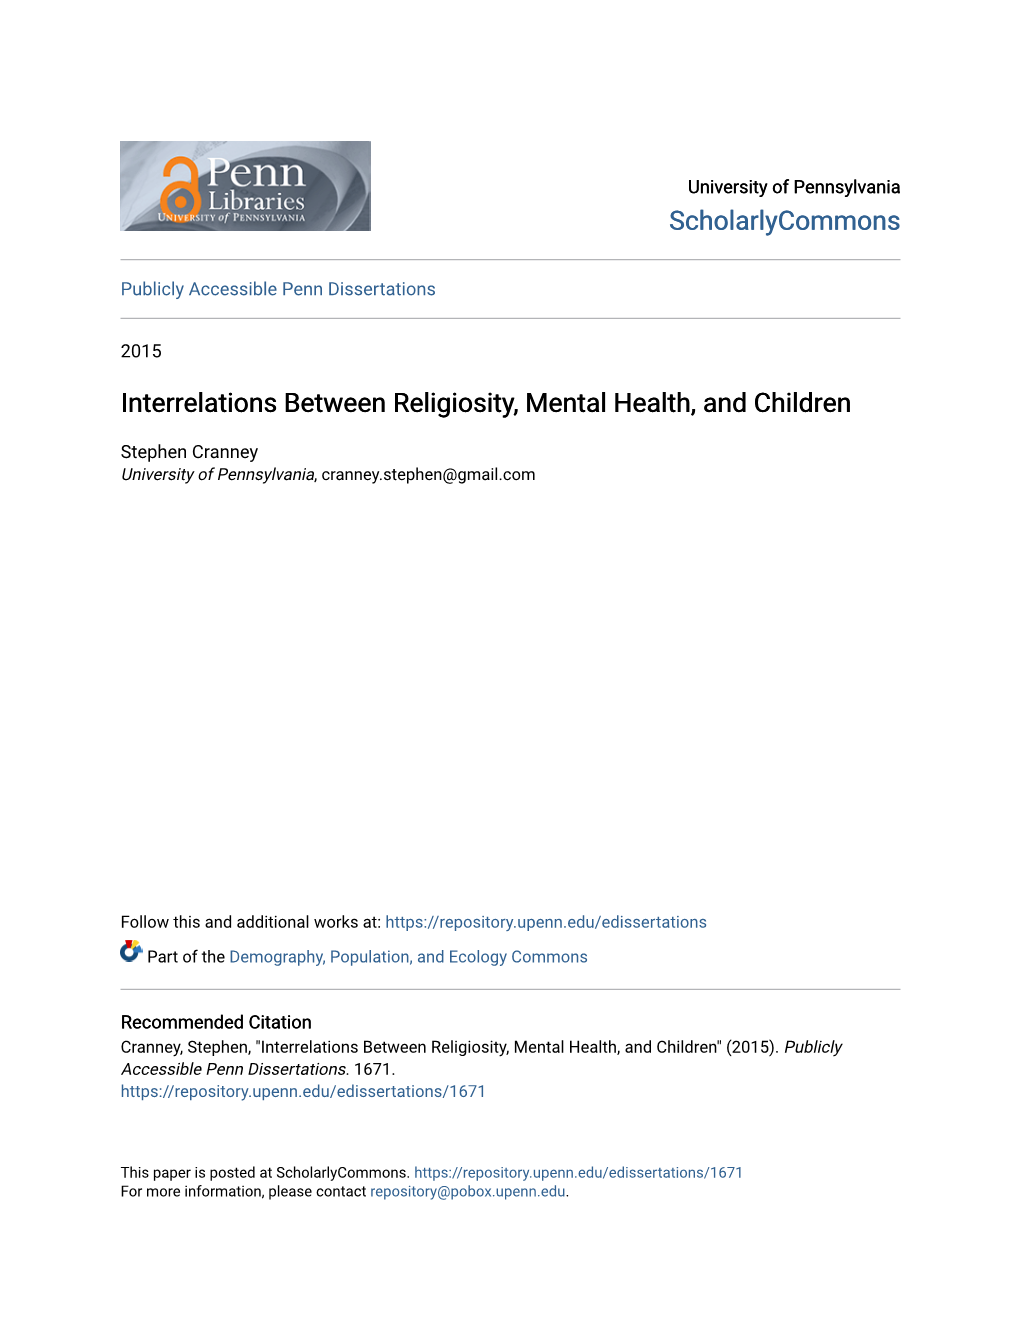 Interrelations Between Religiosity, Mental Health, and Children